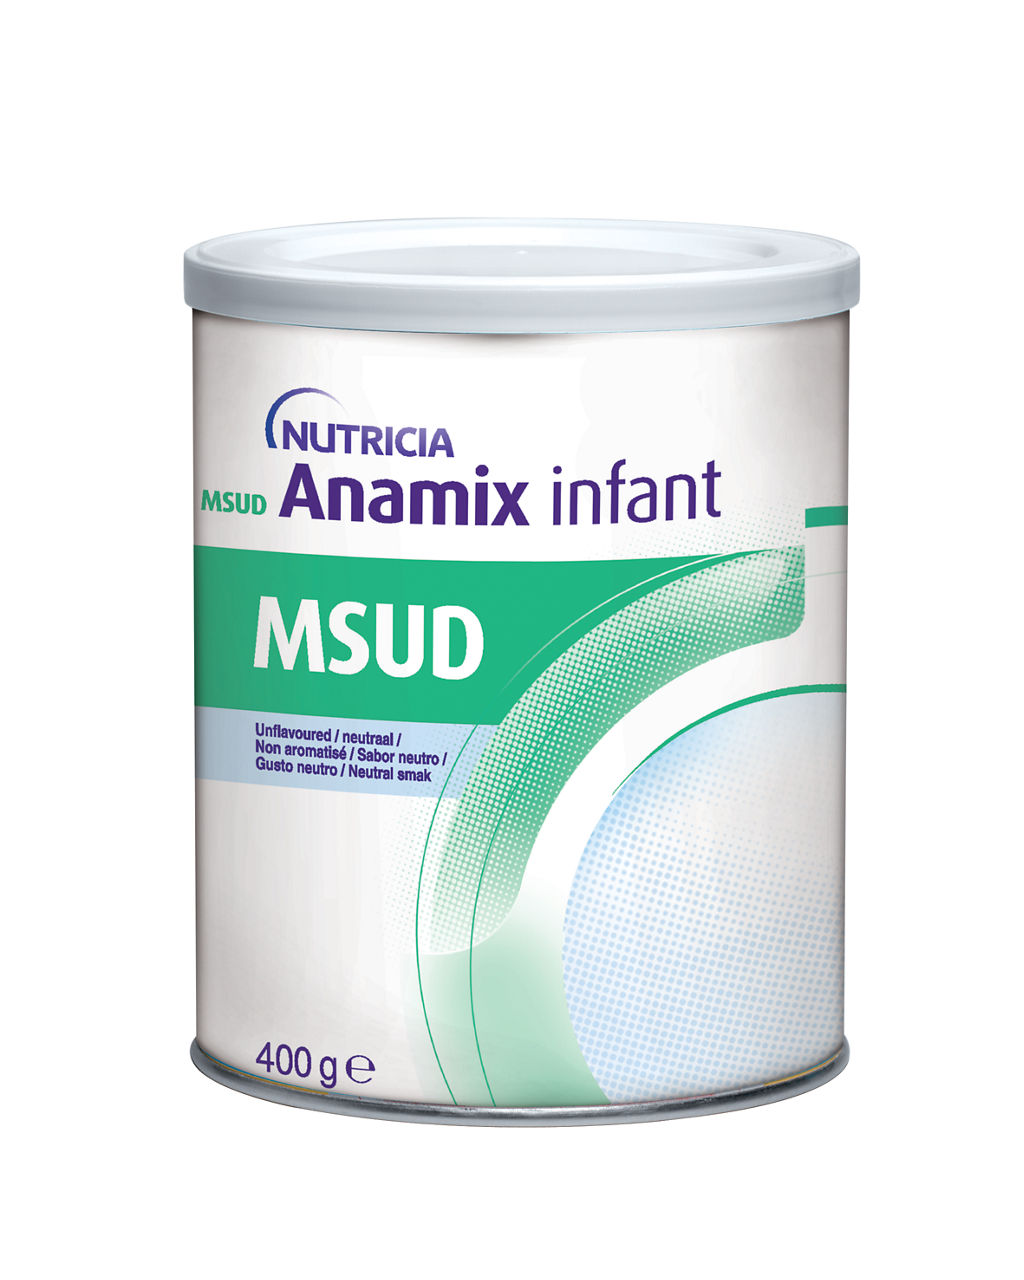 en-GB,MSUD Anamix Infant